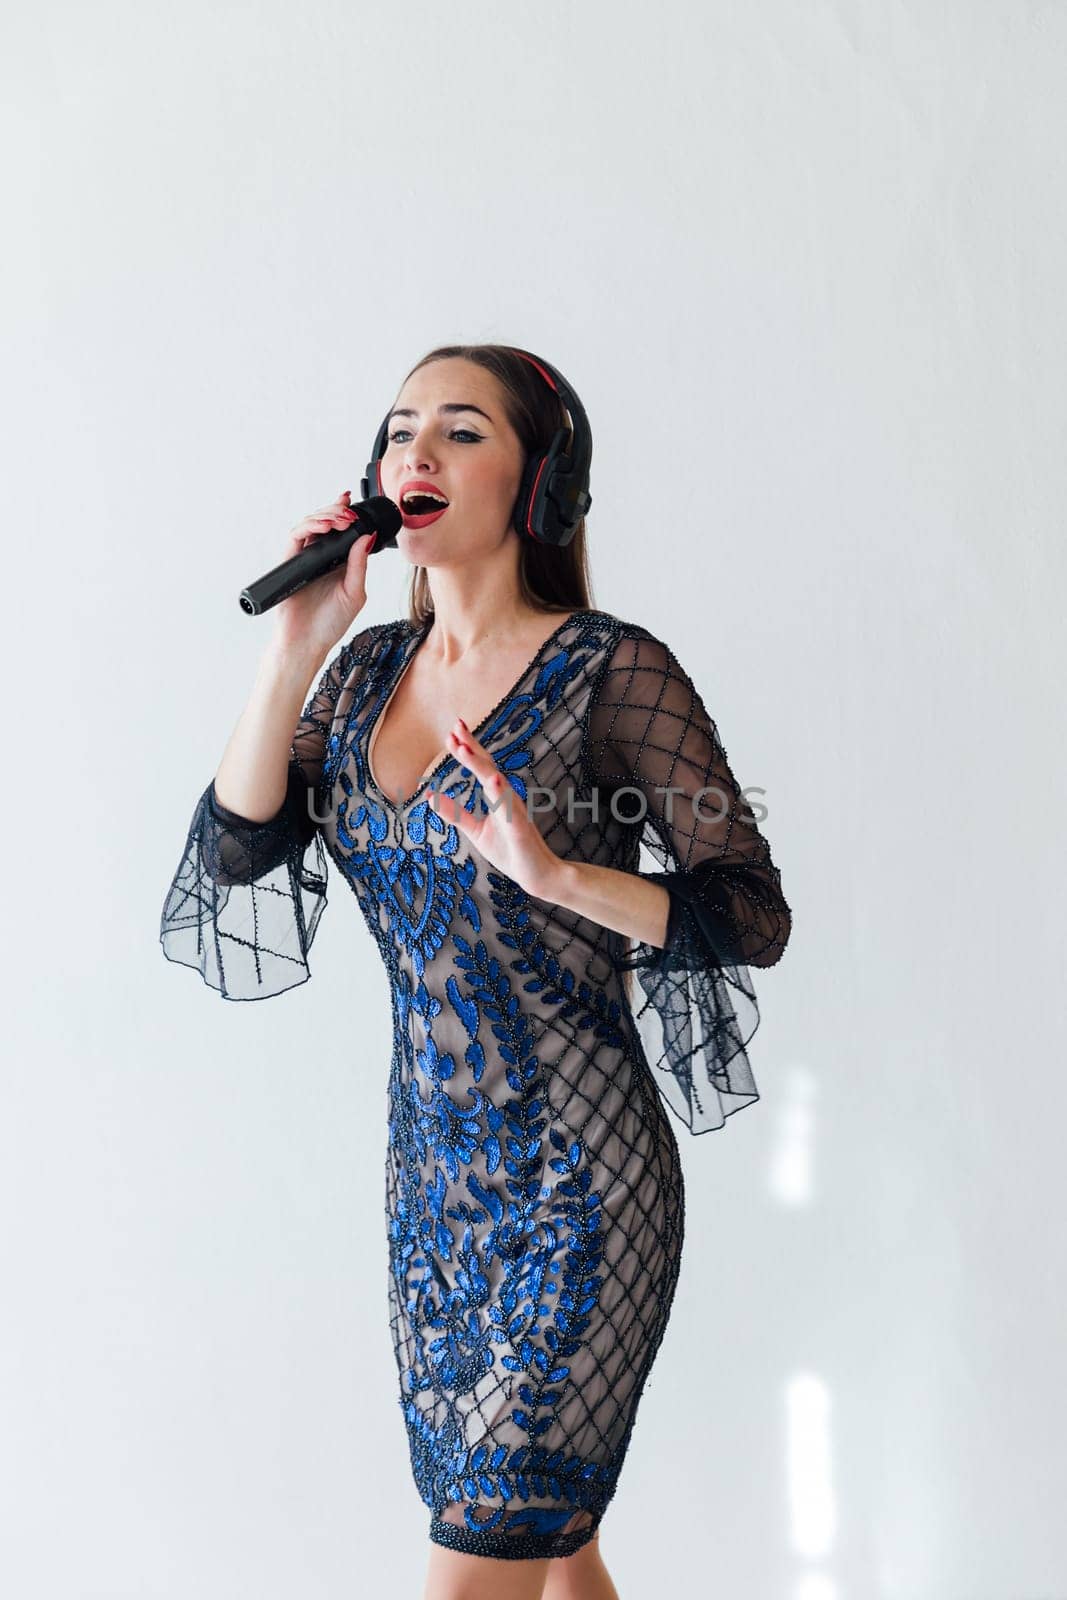 female singer sings song into microphone in headphones in karaoke by Simakov